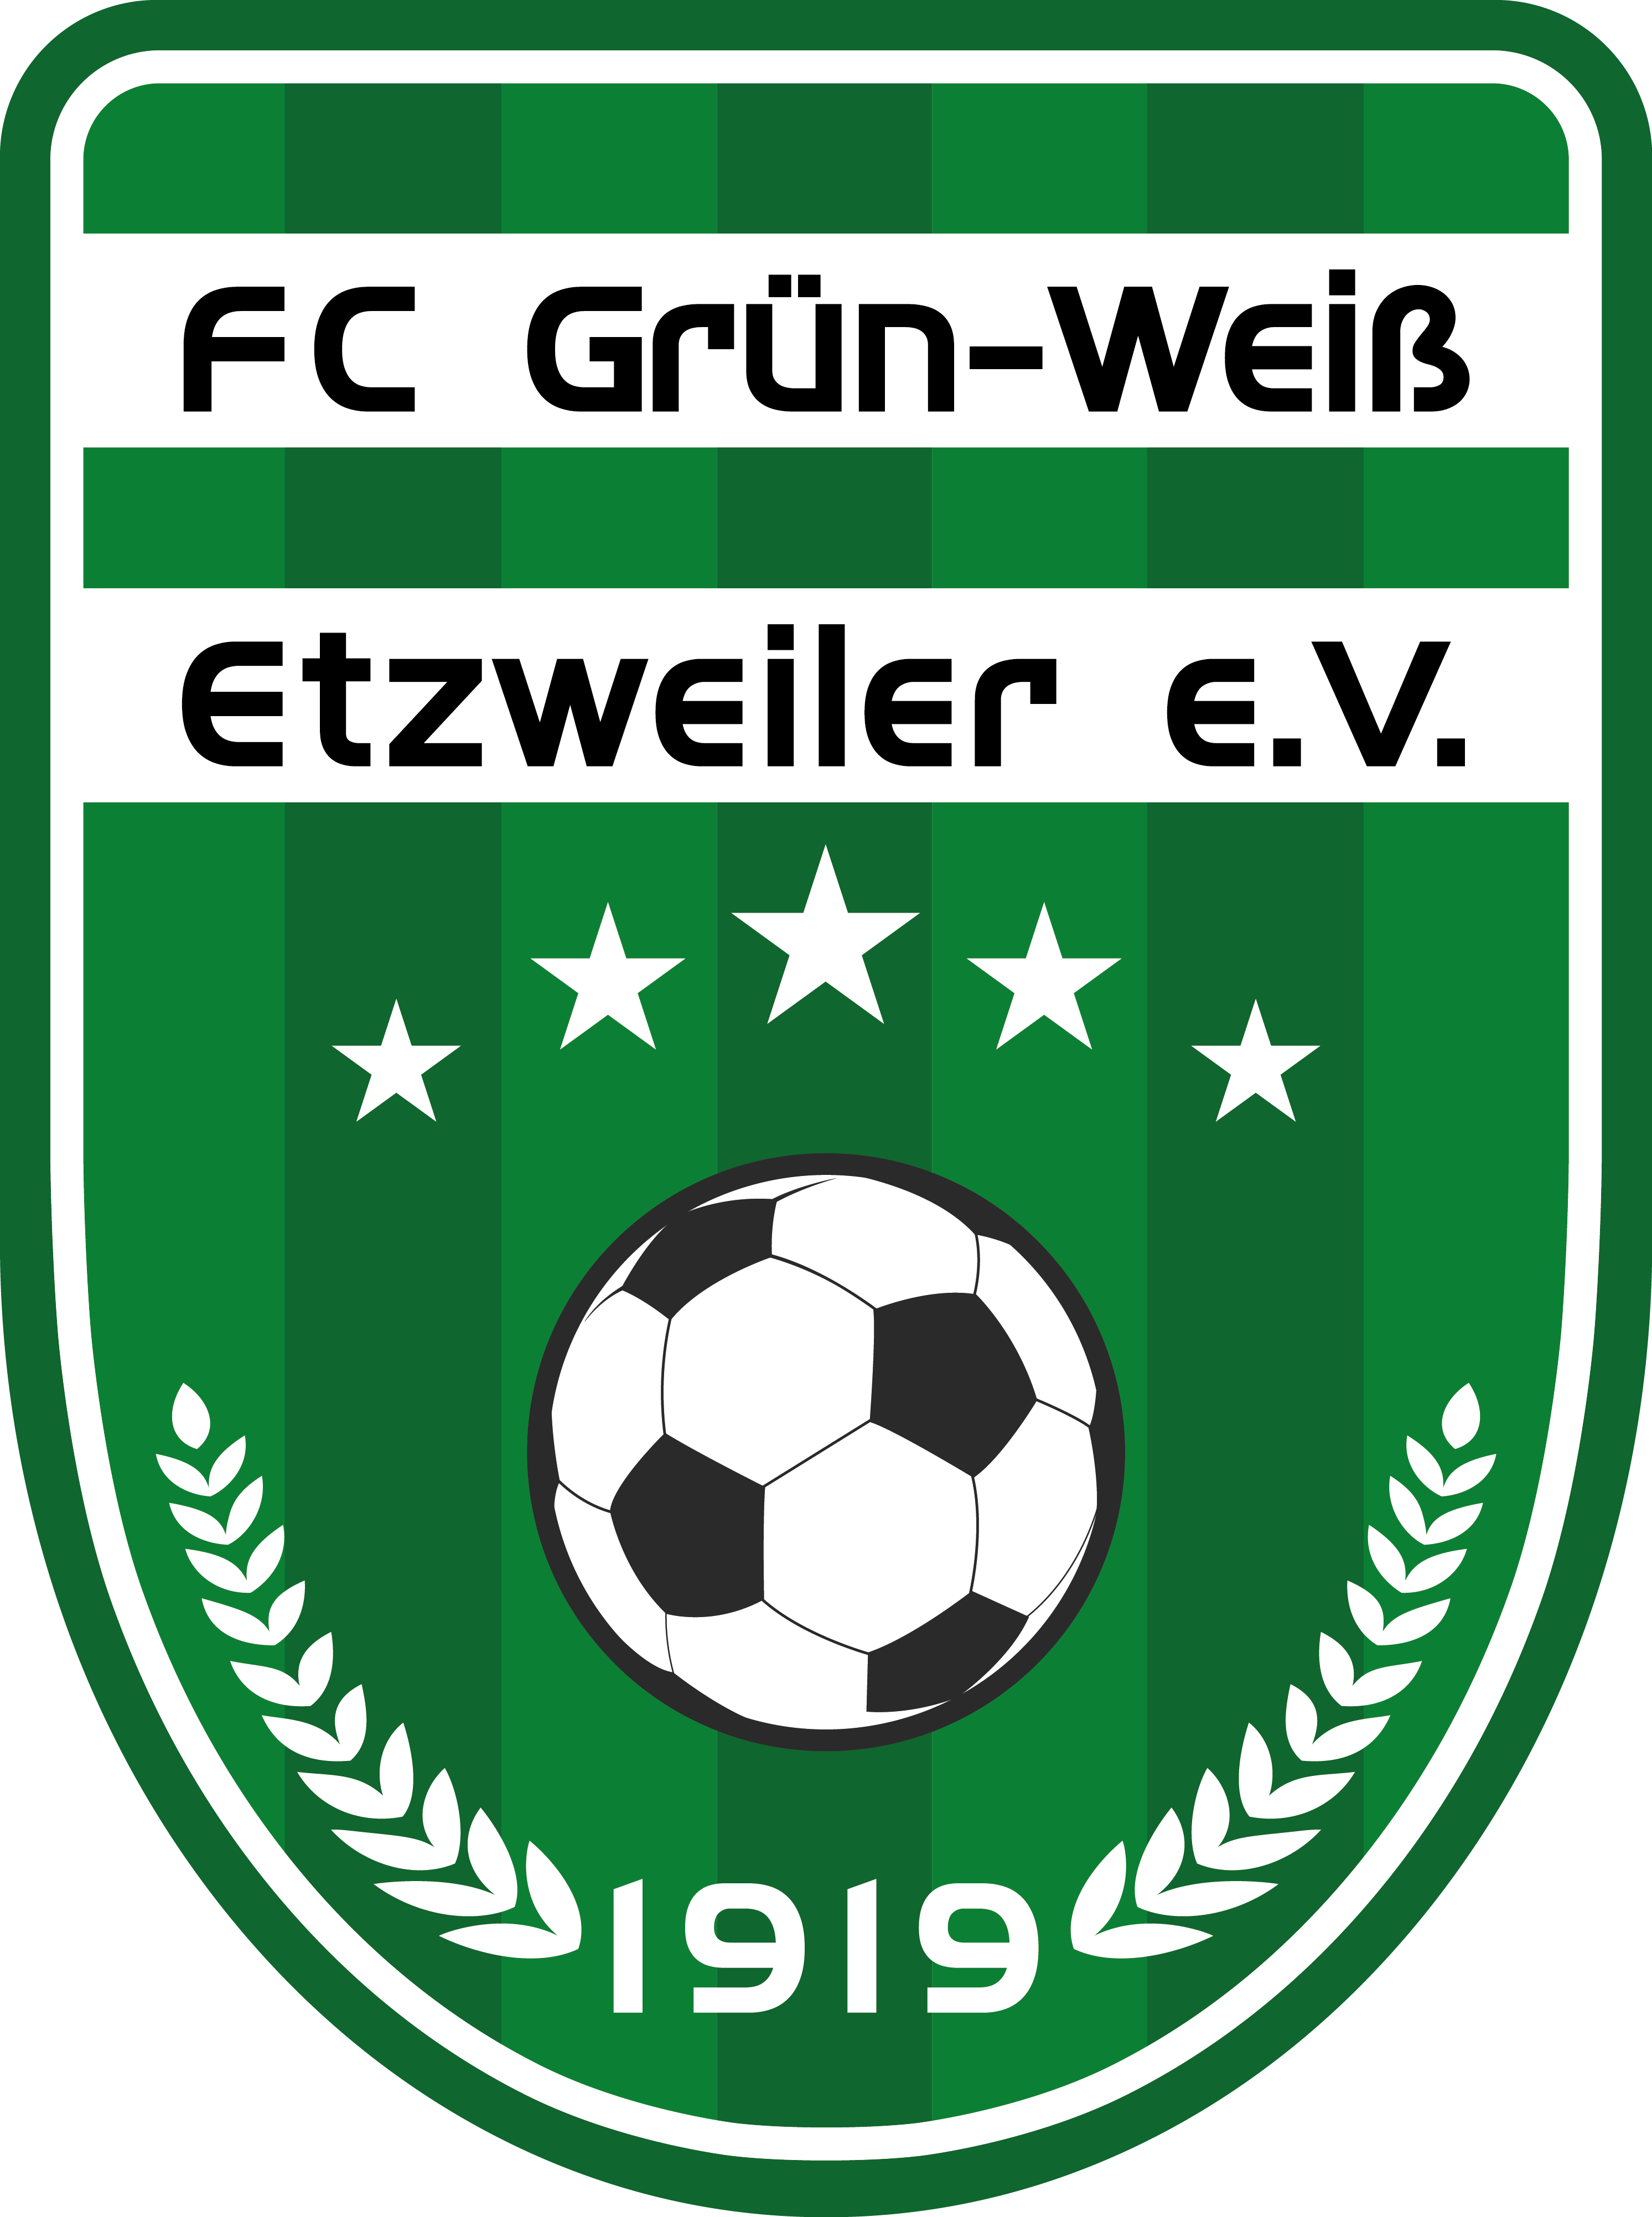 FC Grün-Weiß Etzweiler e.V. 1919